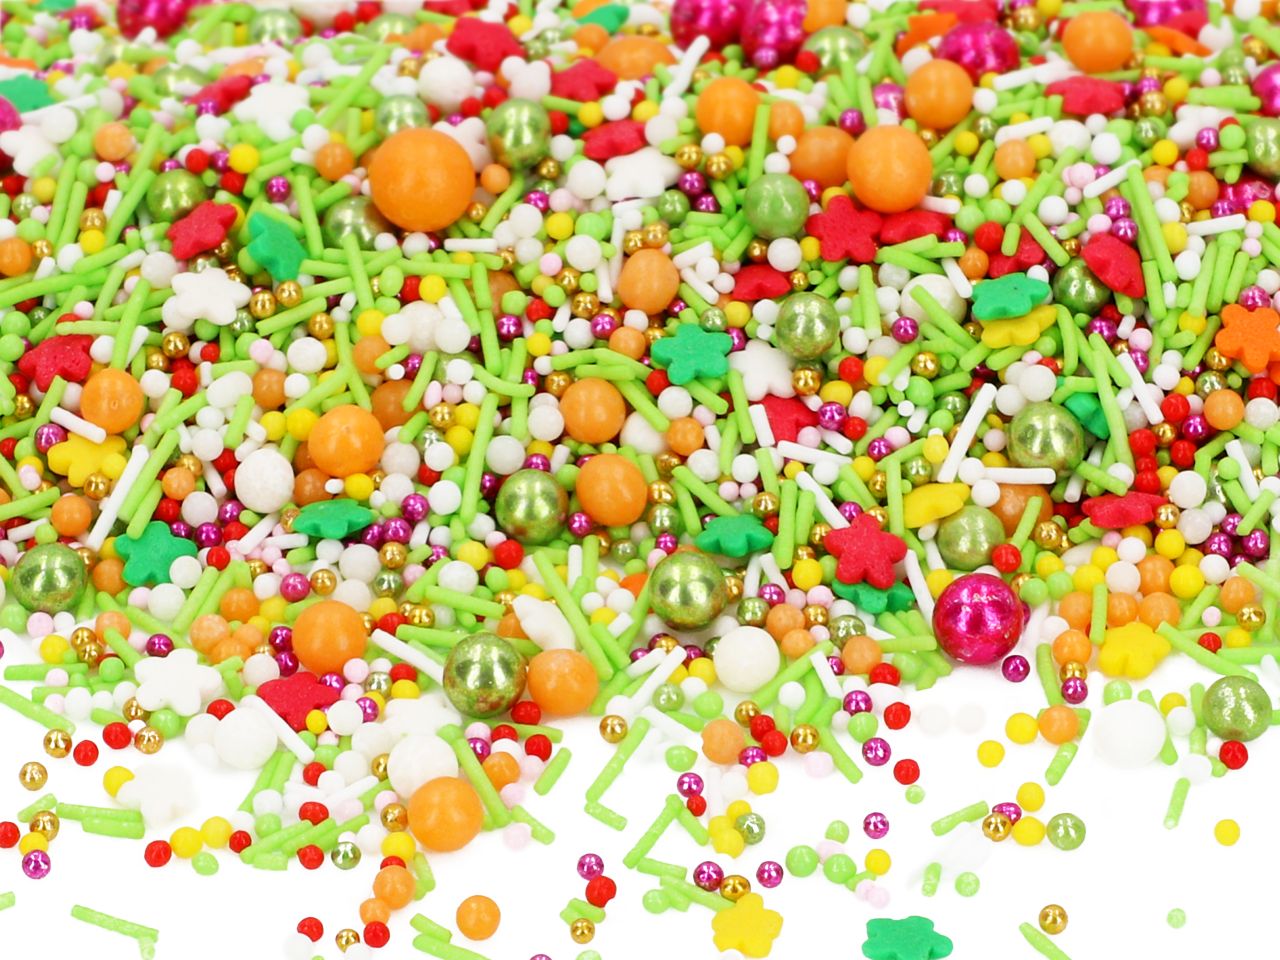 Zucker-Streusel-happy-Sprinkles-mix-orange-gelb-grün-perlen-